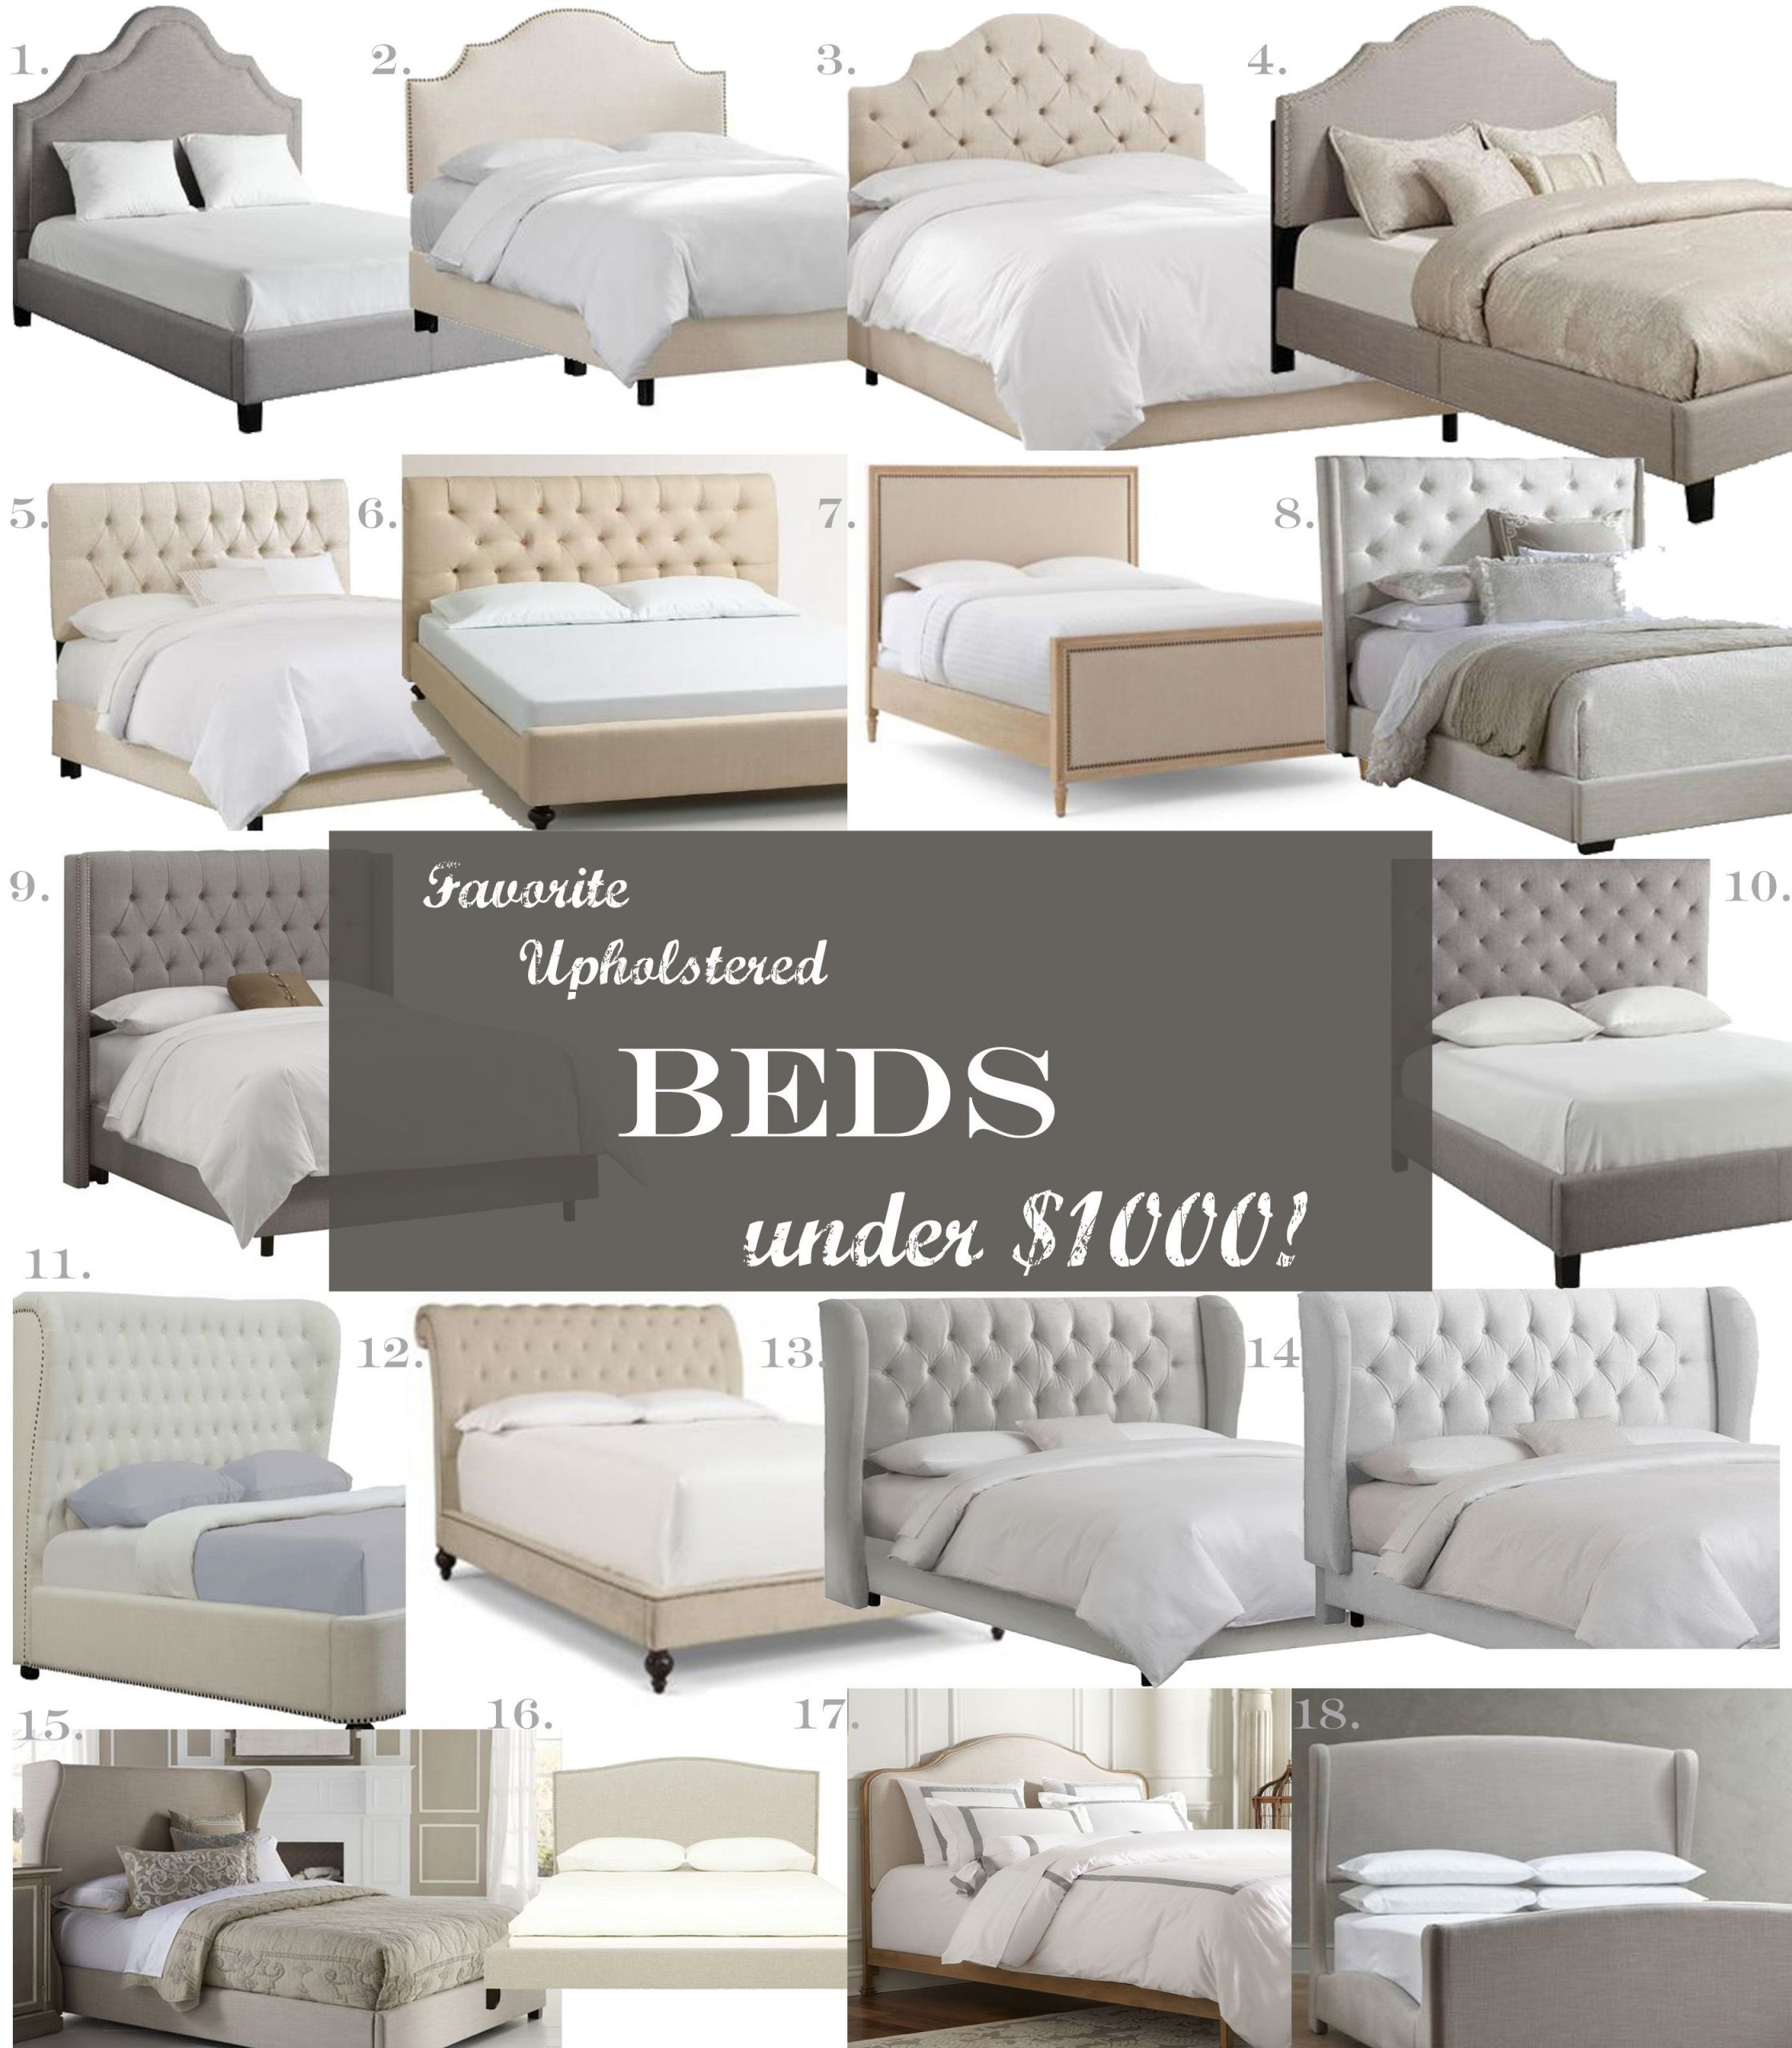 Modern Bedroom Sets Under 1000
 Favorite Upholstered Beds under $1 000